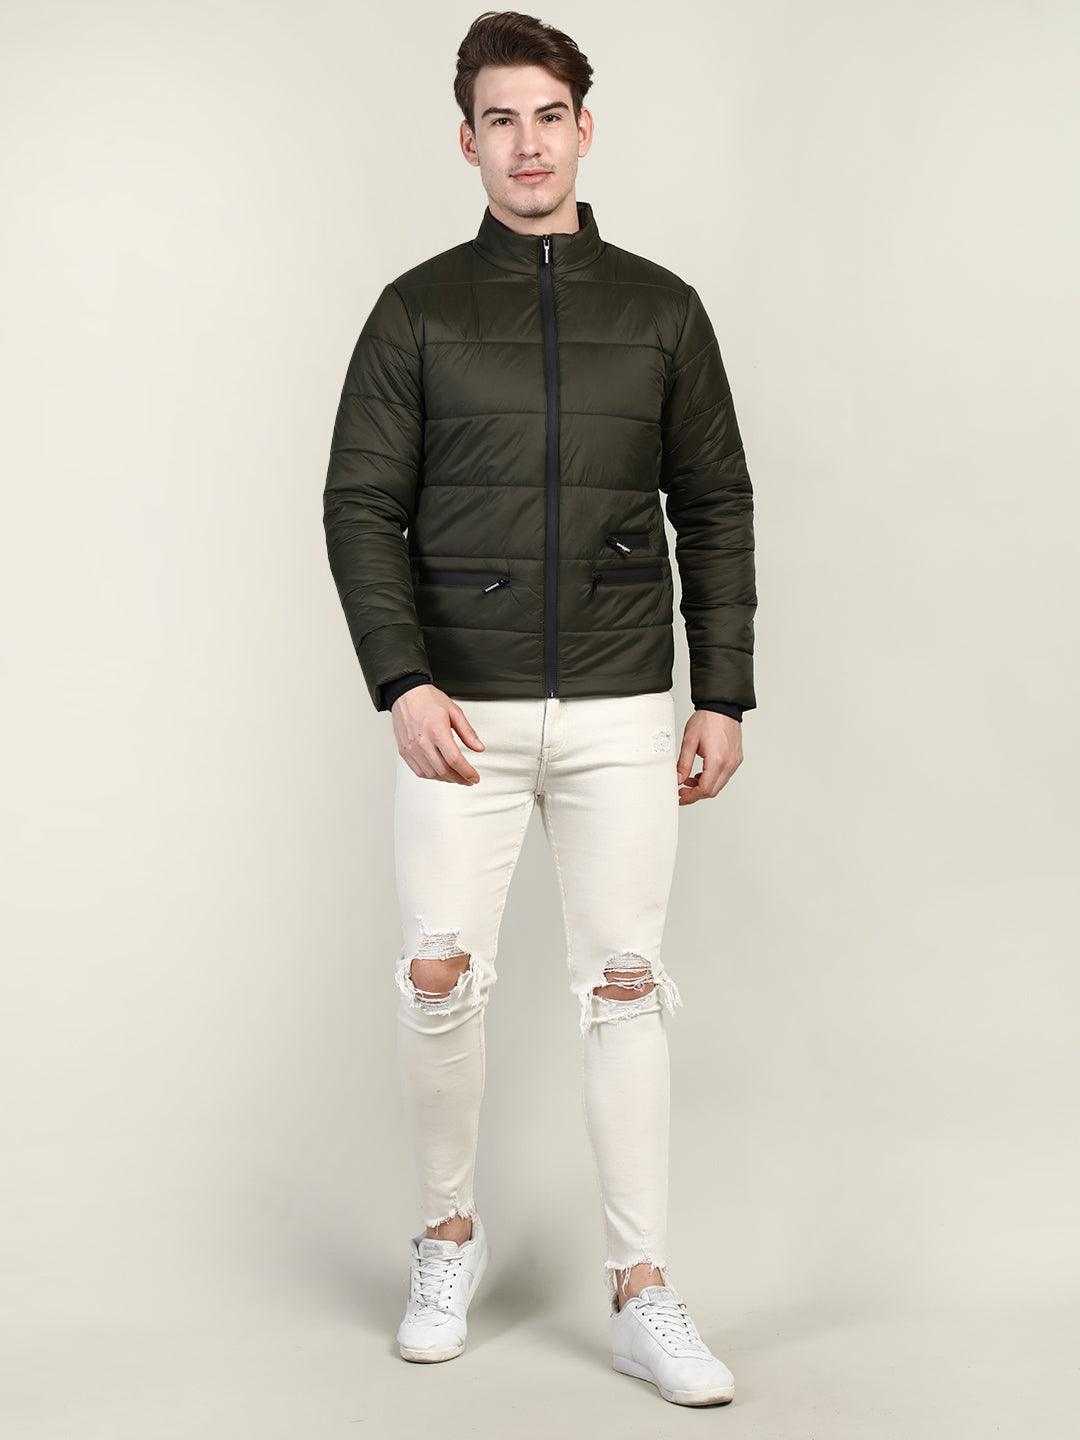 Men's Winter Wear Jacket | CHKOKKO - Chkokko